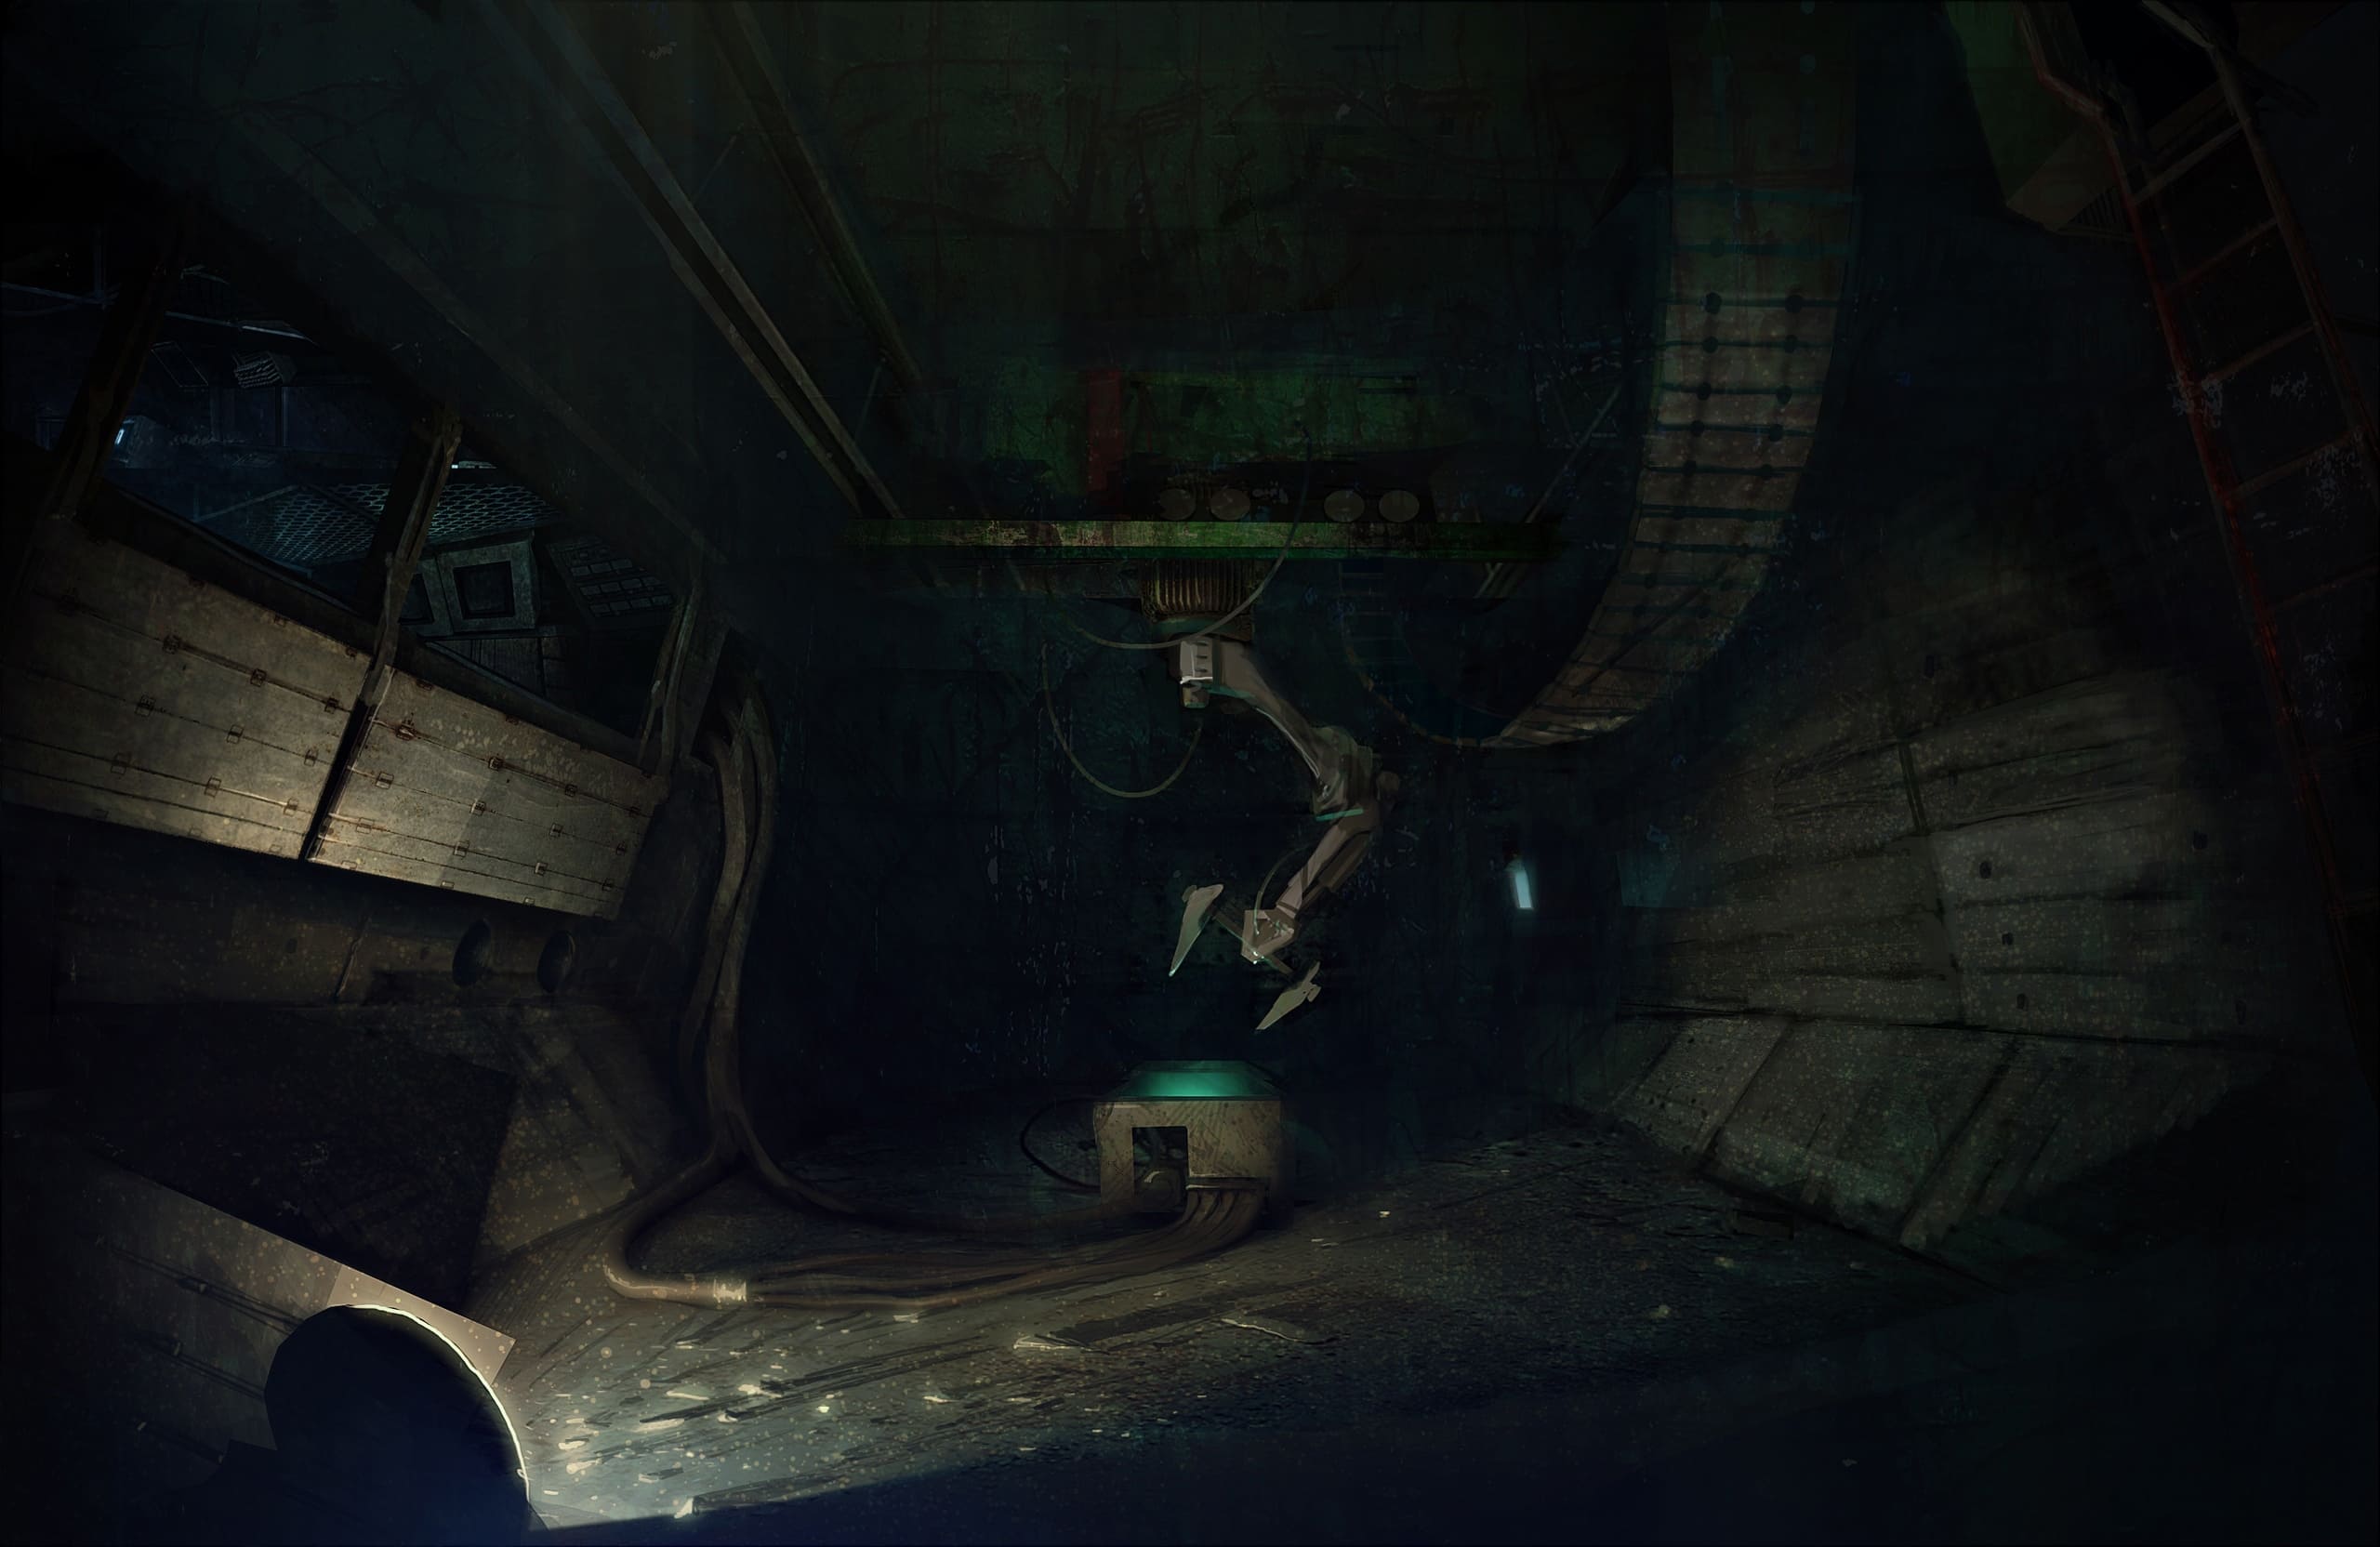 《潜行者2》设计文件概念图早期废弃版本在网上泄露 一探游戏设计思路